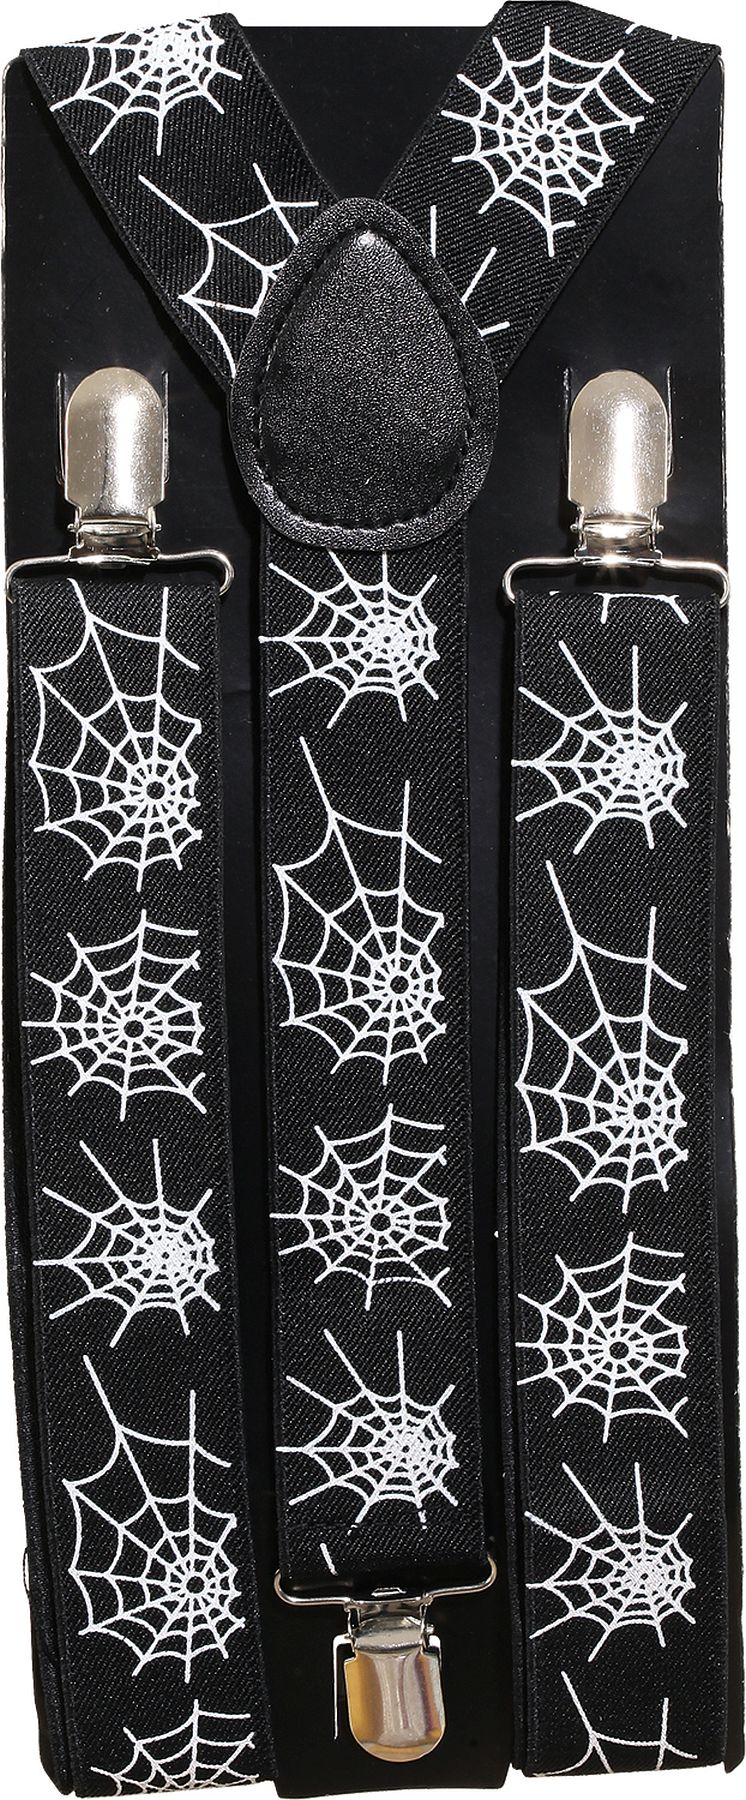 Suspenders, spider's net